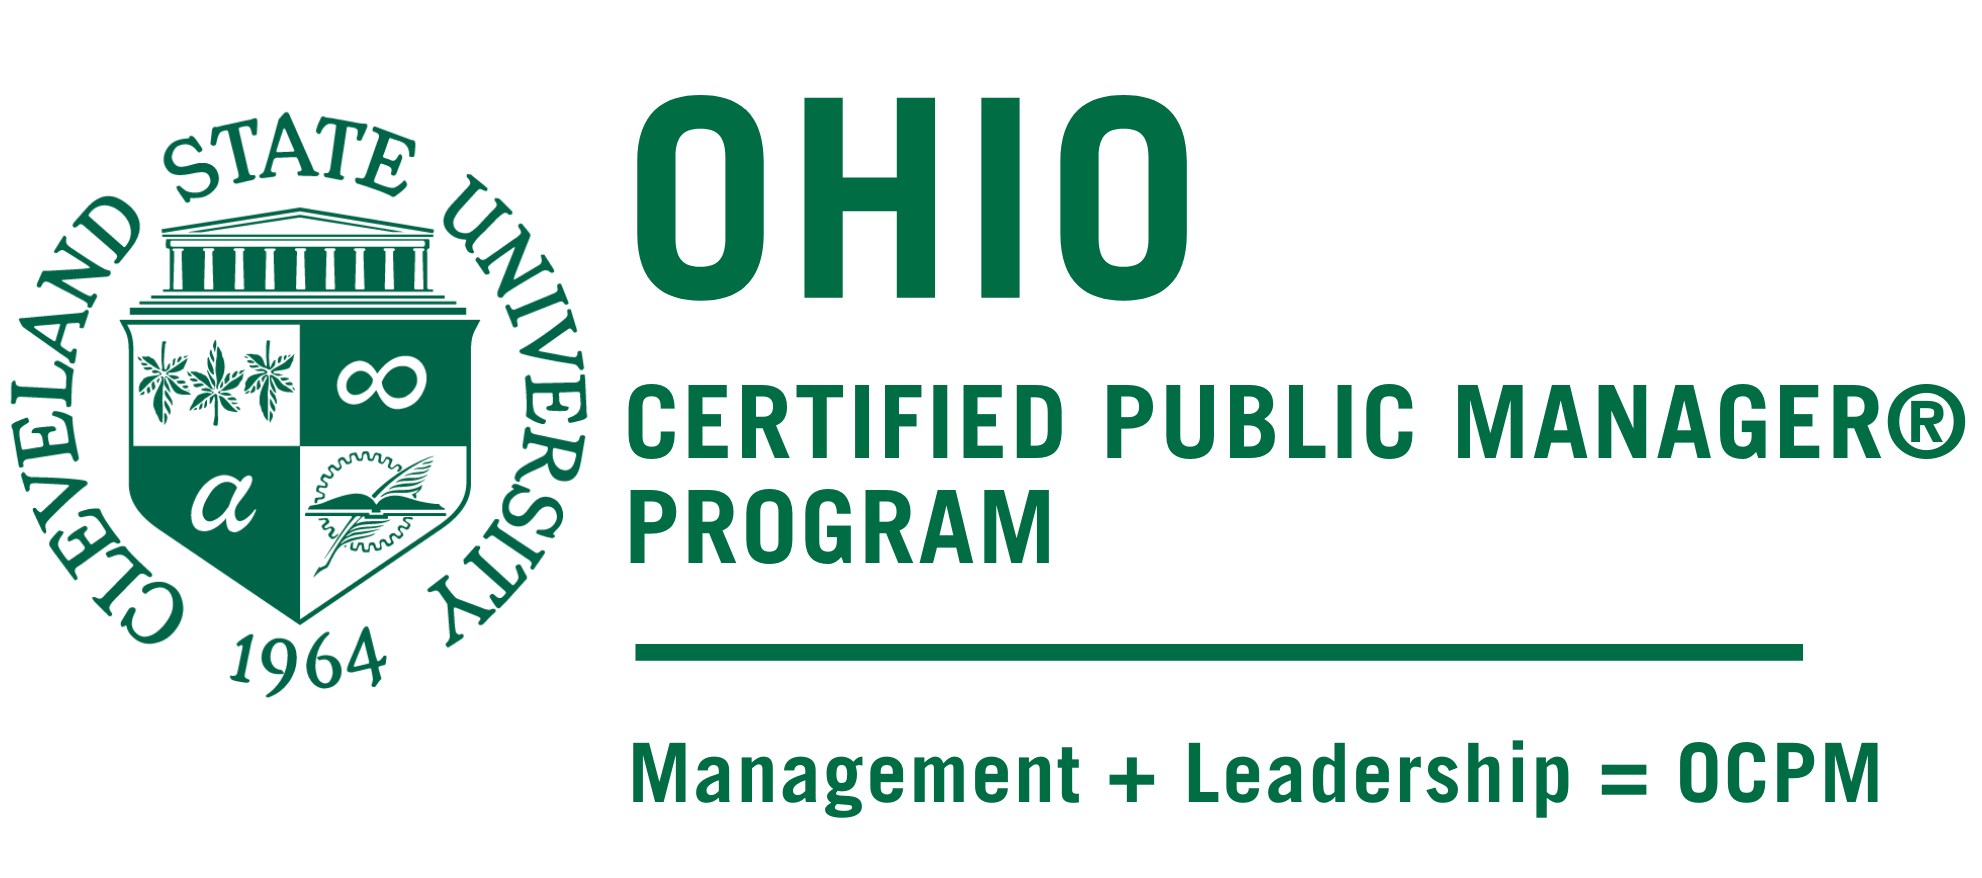 俄亥俄州注册公共经理项目